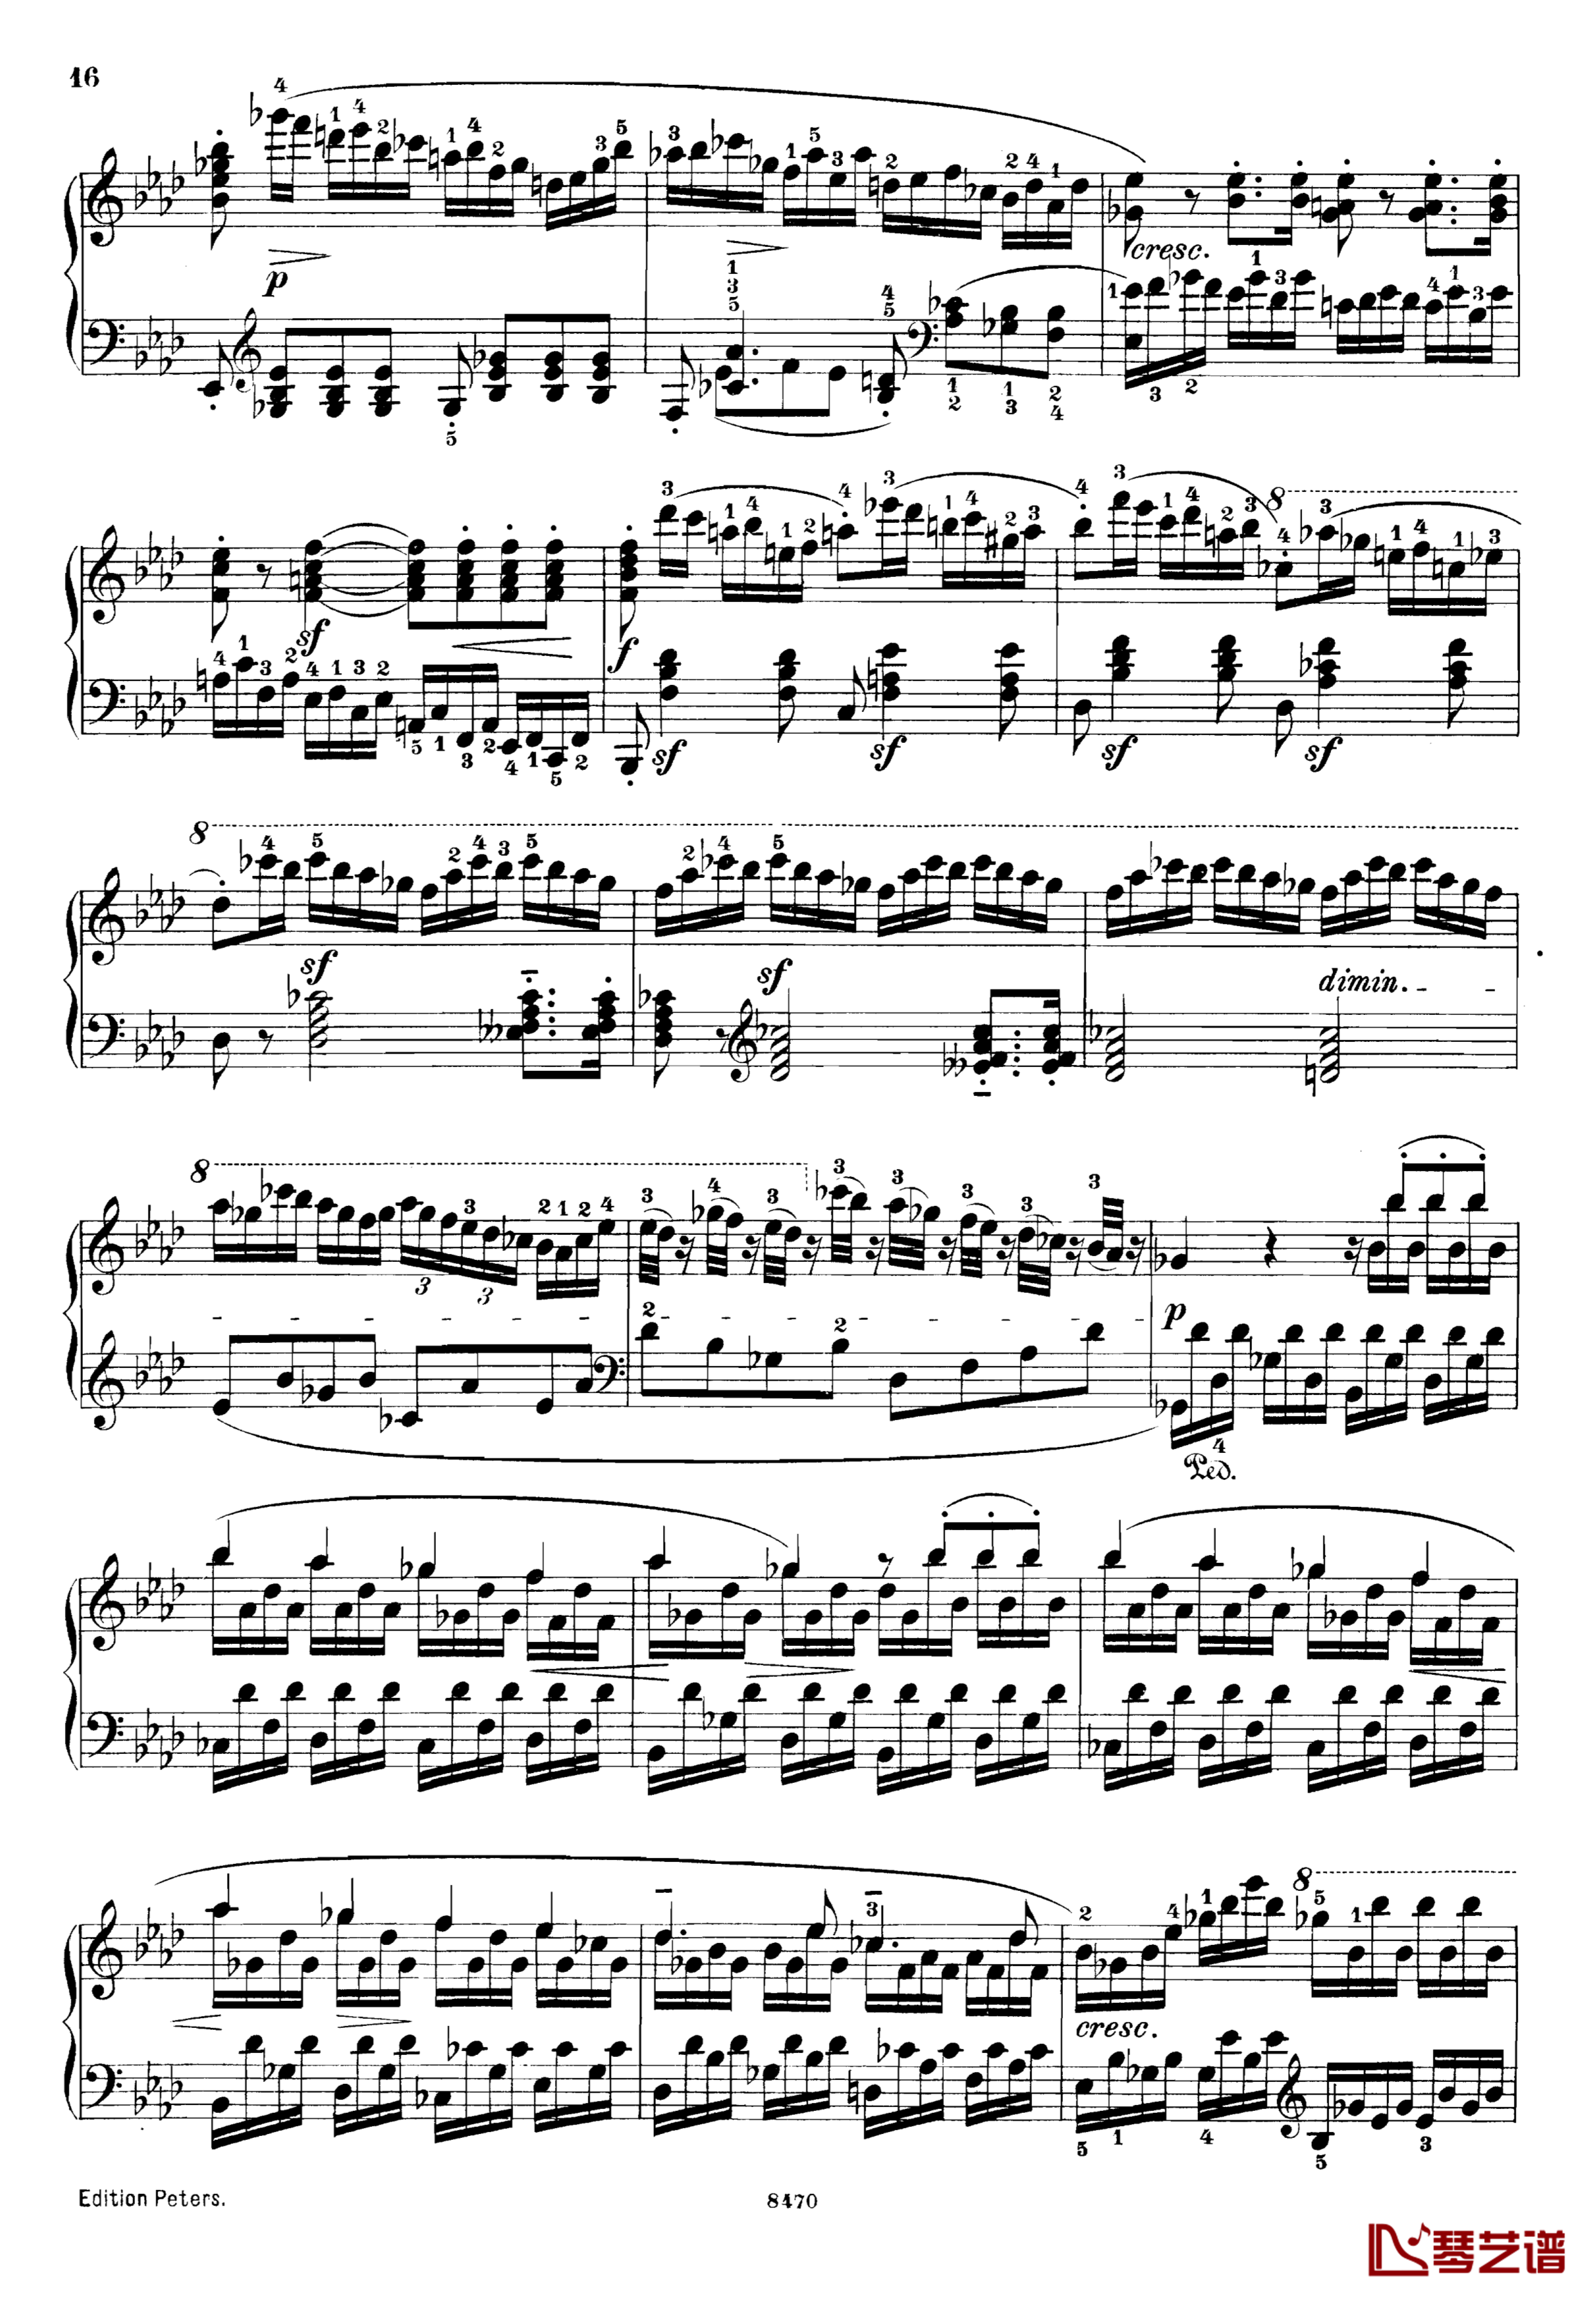 升c小调第三钢琴协奏曲Op.55钢琴谱-克里斯蒂安-里斯16